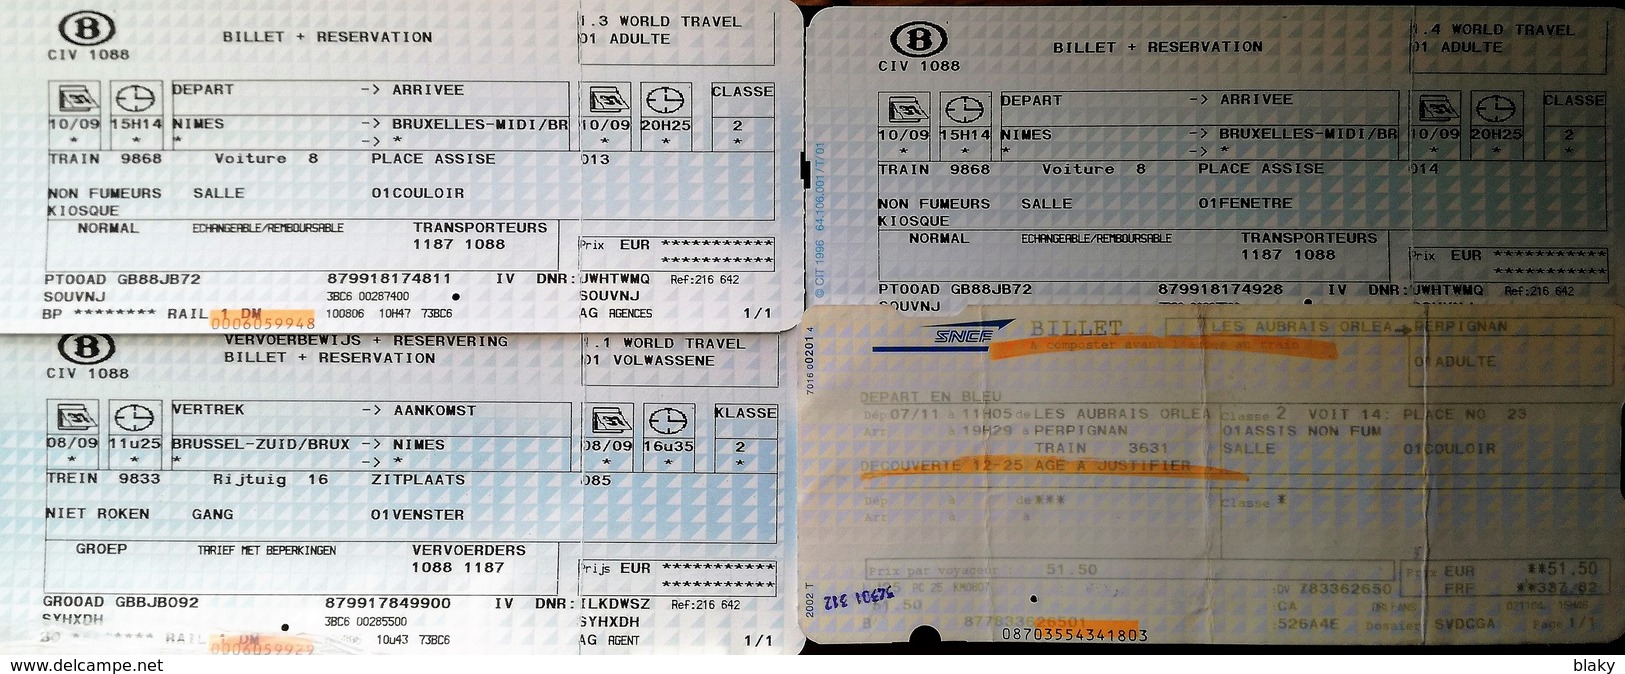 2007 - 3 BILLETS SNCB - BRUXELLES NIMES EN  FRANCAIS ET FLAMAND ALLER RETOUR  COULOIR FENETRE+ 1 SNCF ORLEANS PERPIGNAN - Europe